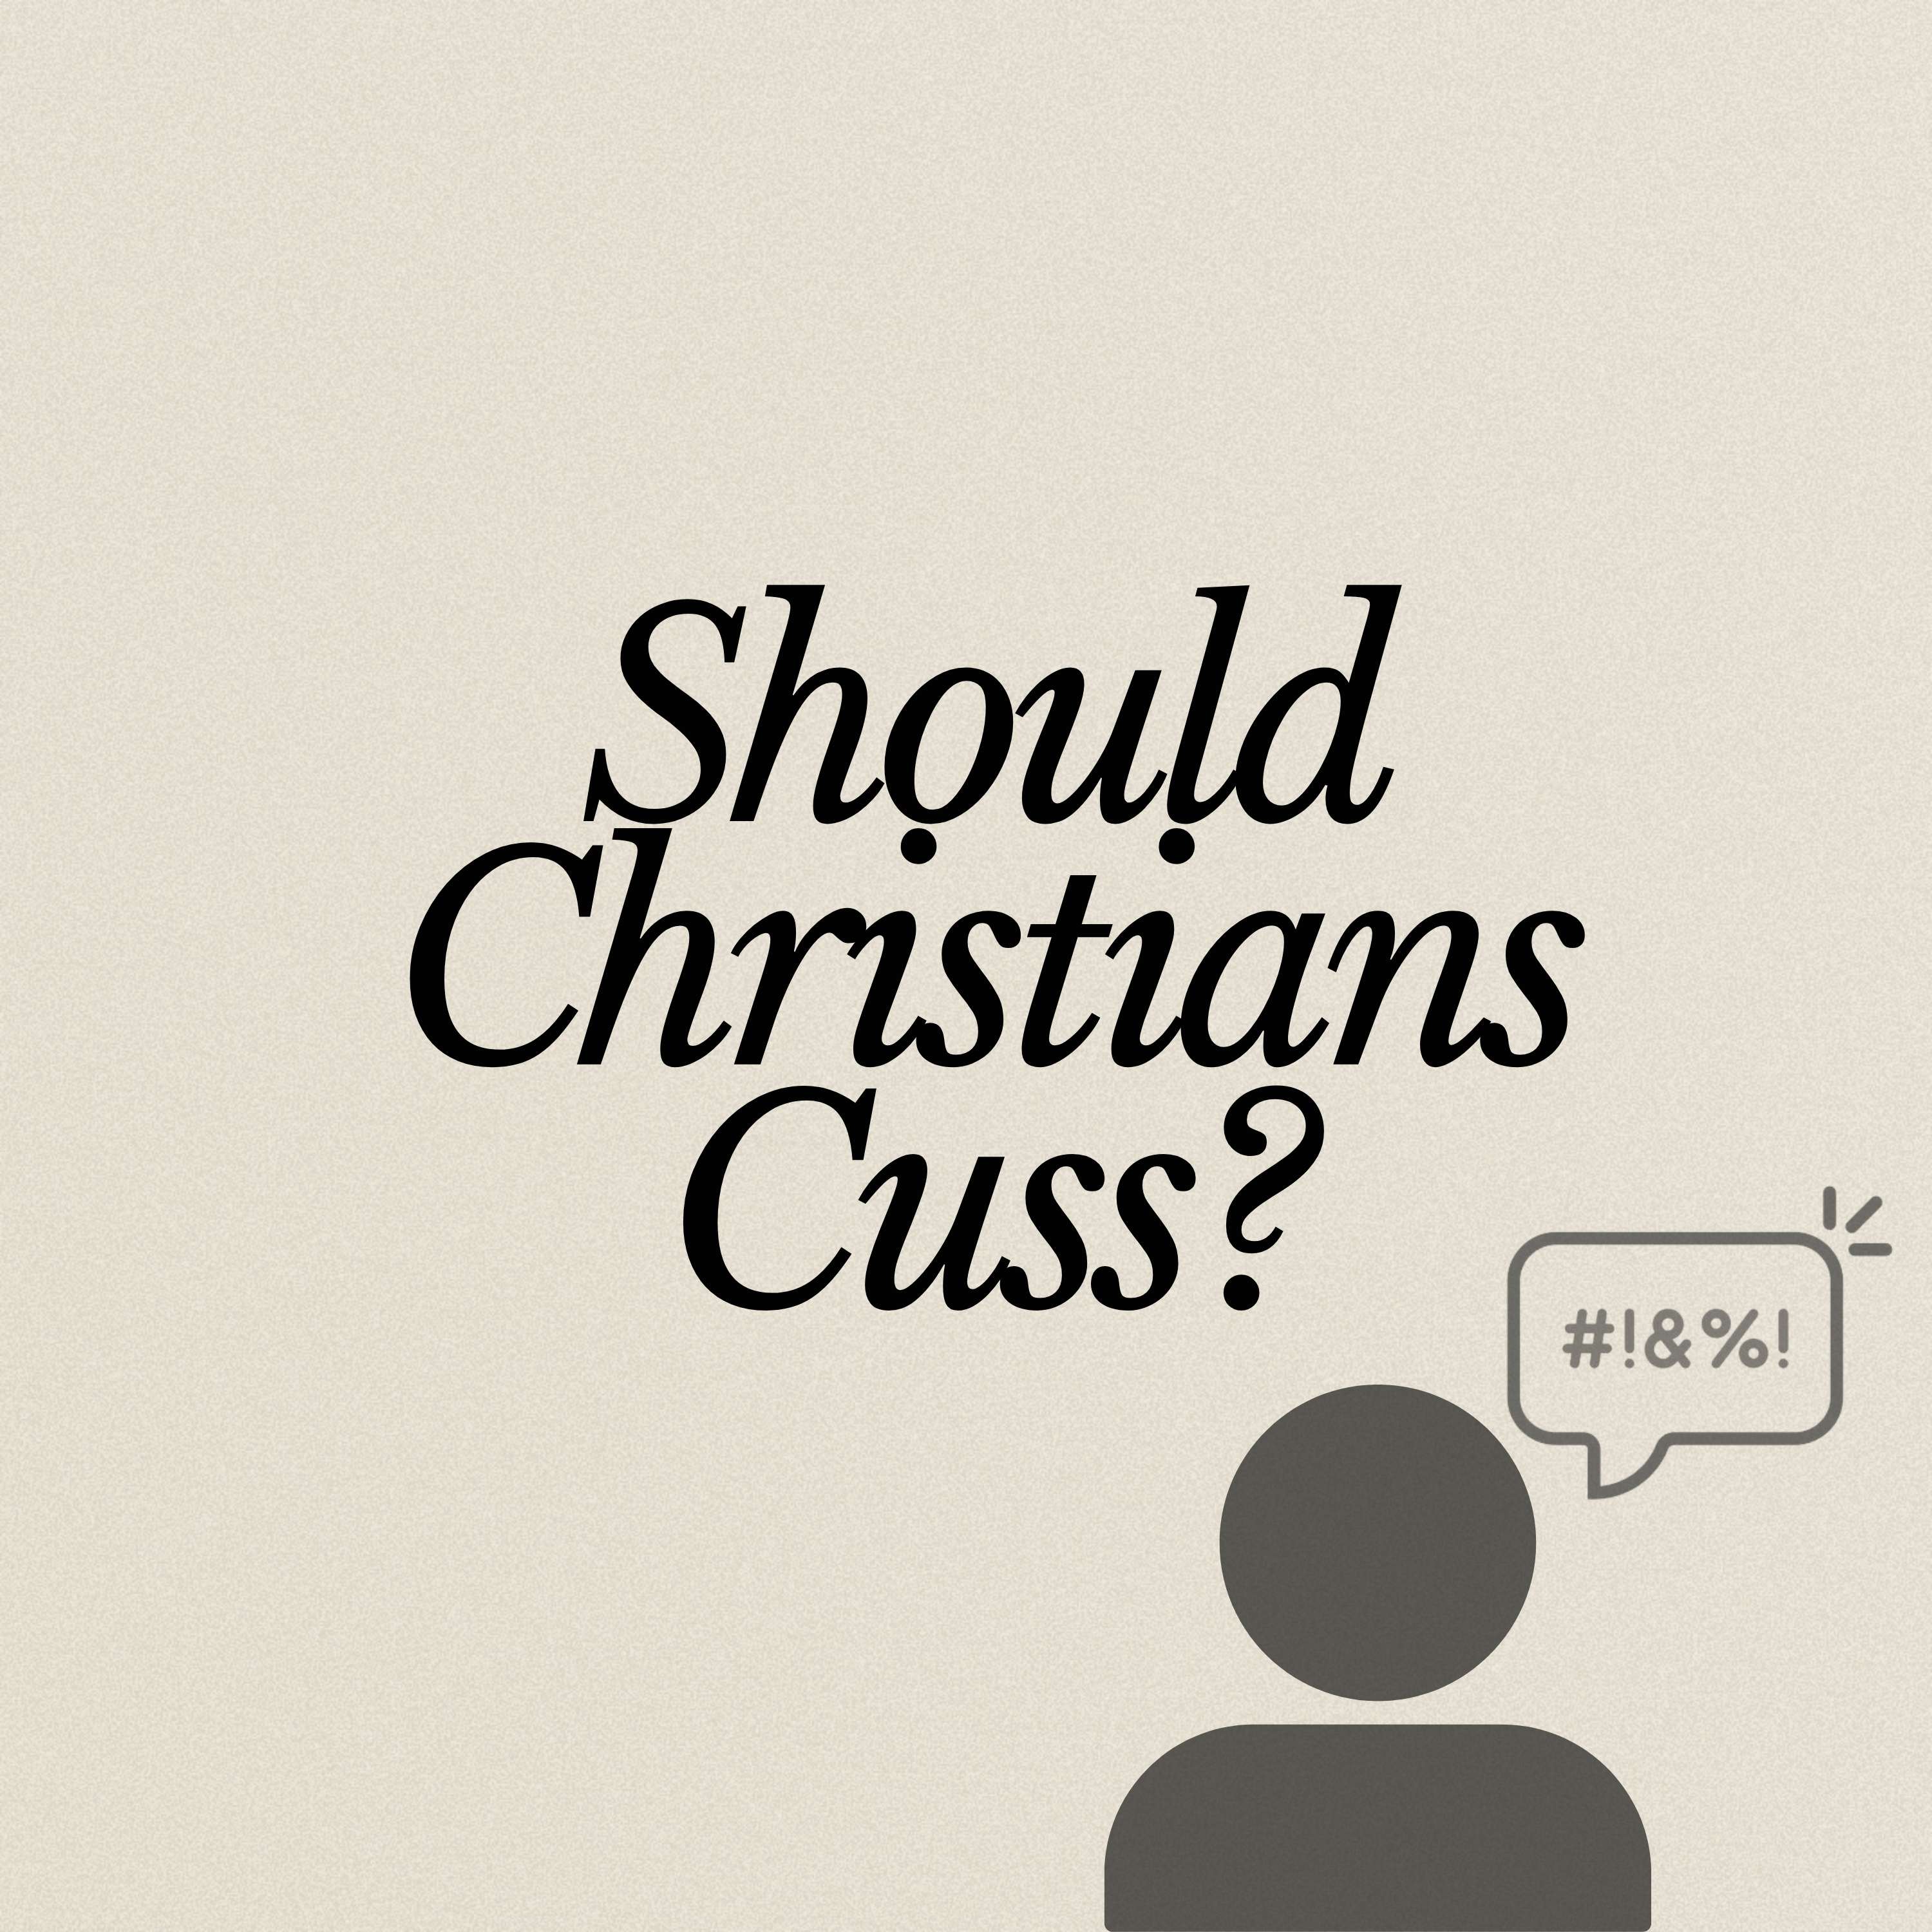 Should Christians Cuss?